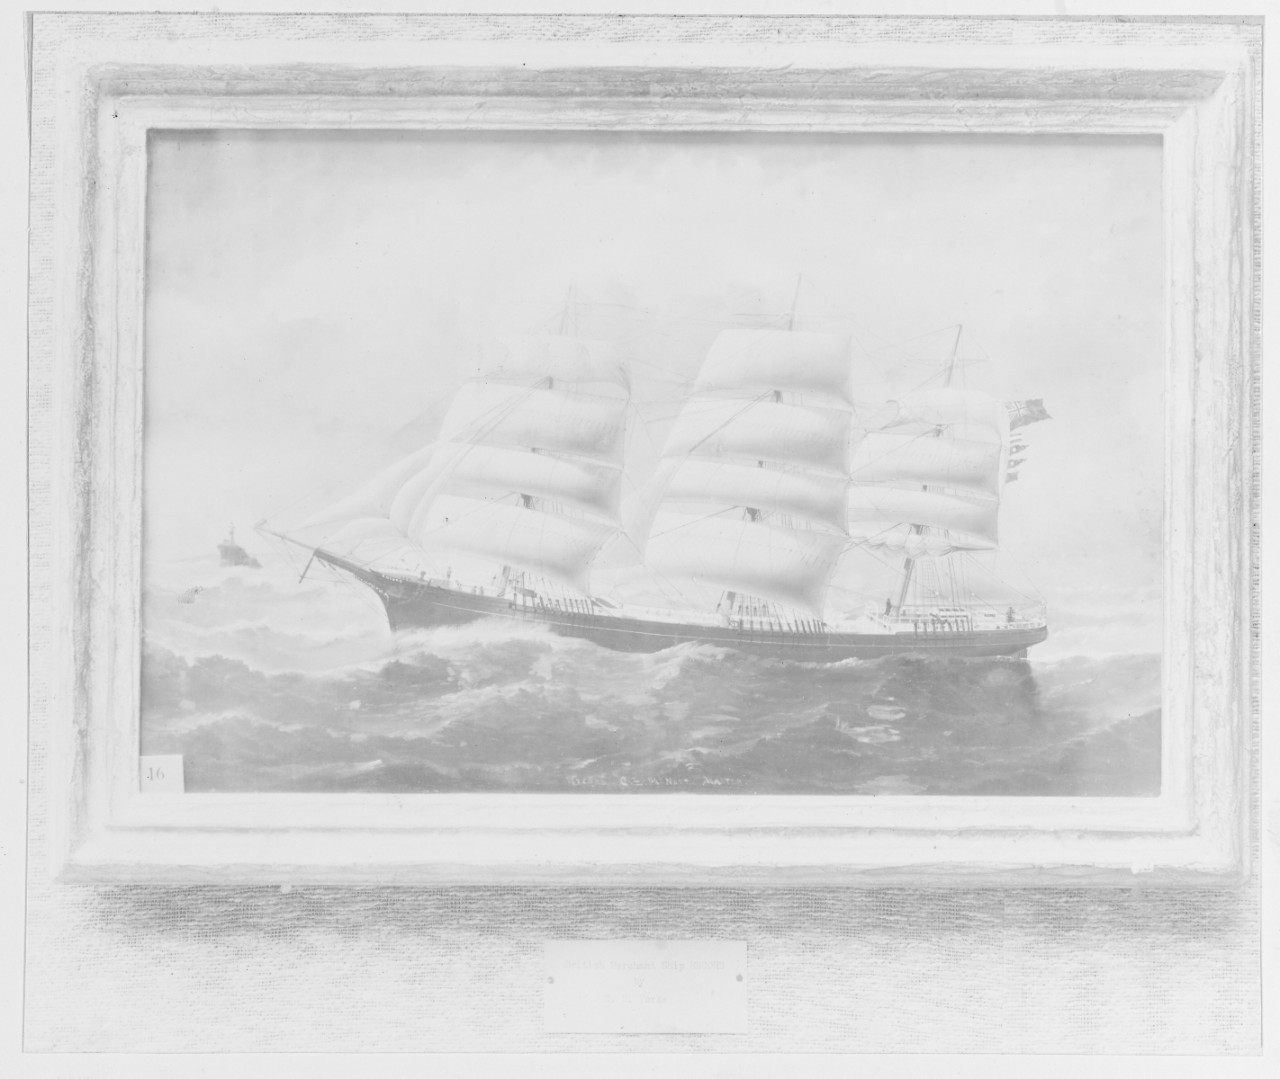 British merchant ship RECORD